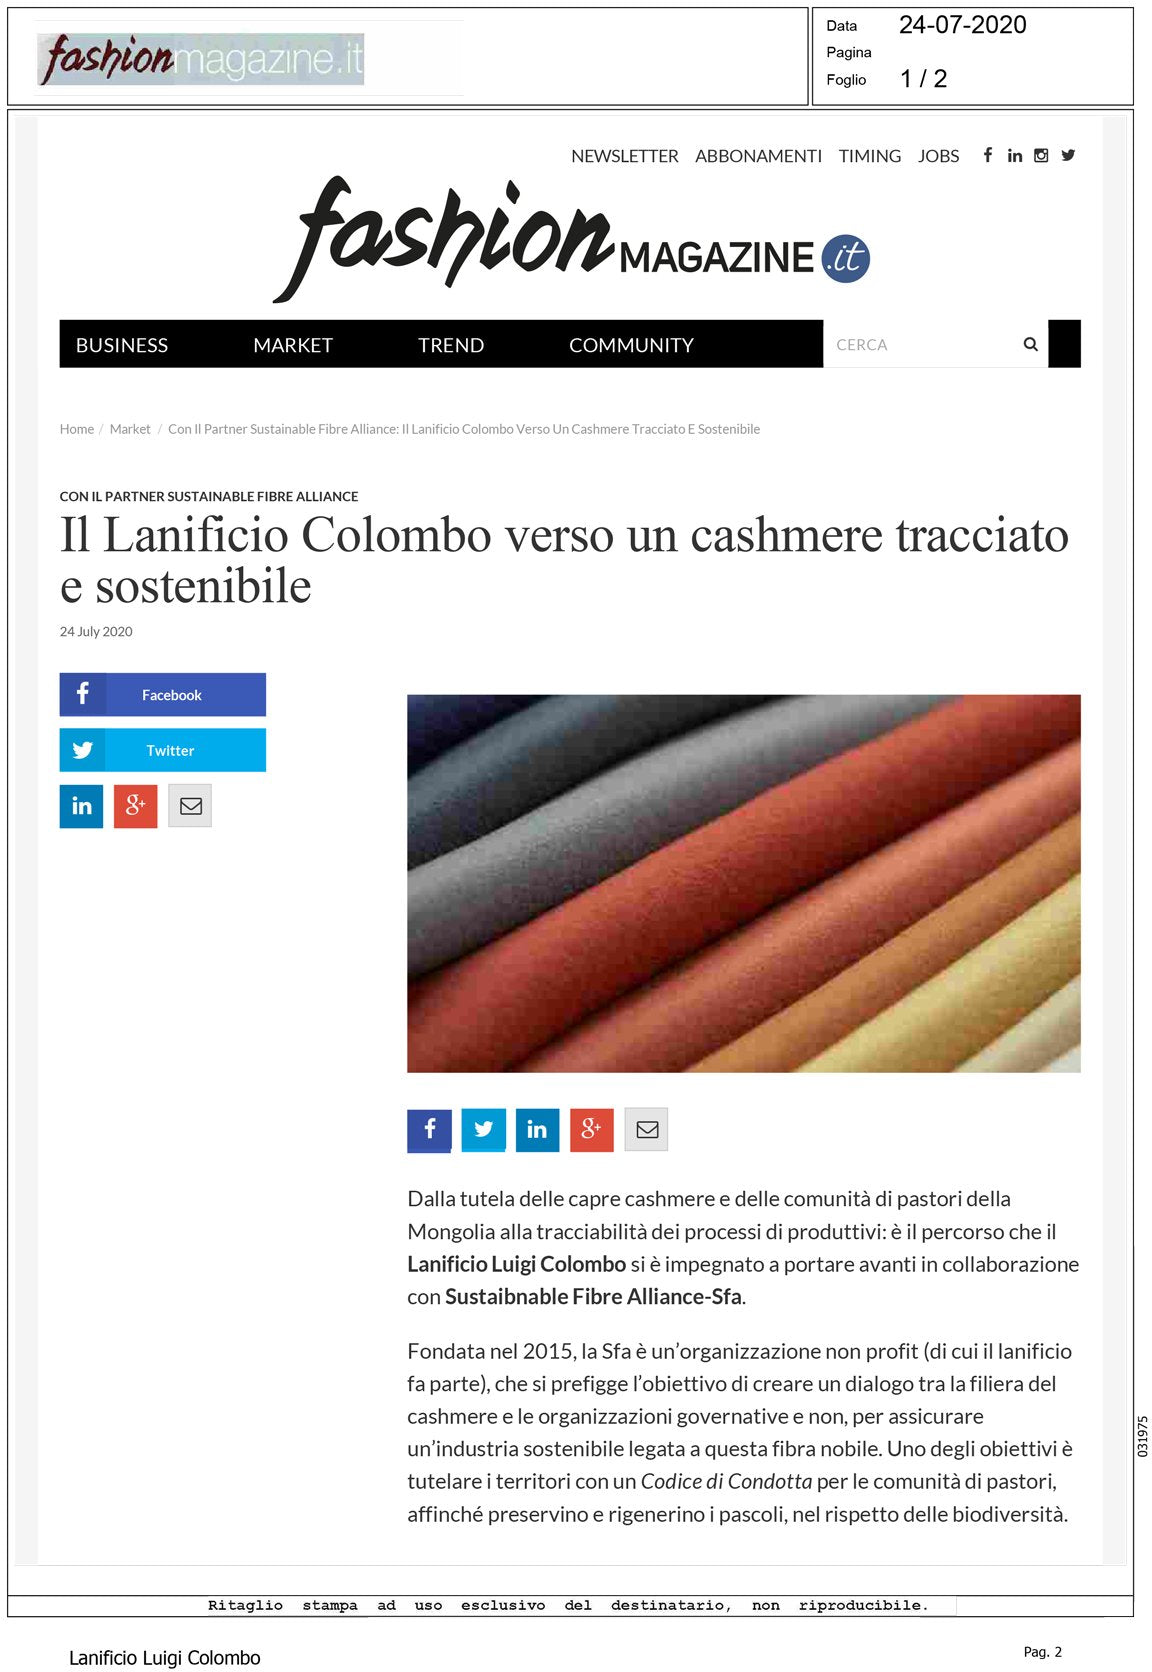 Fashion Magazine -  Il Lanificio Colombo verso un cashmere tracciabile e sostenibile